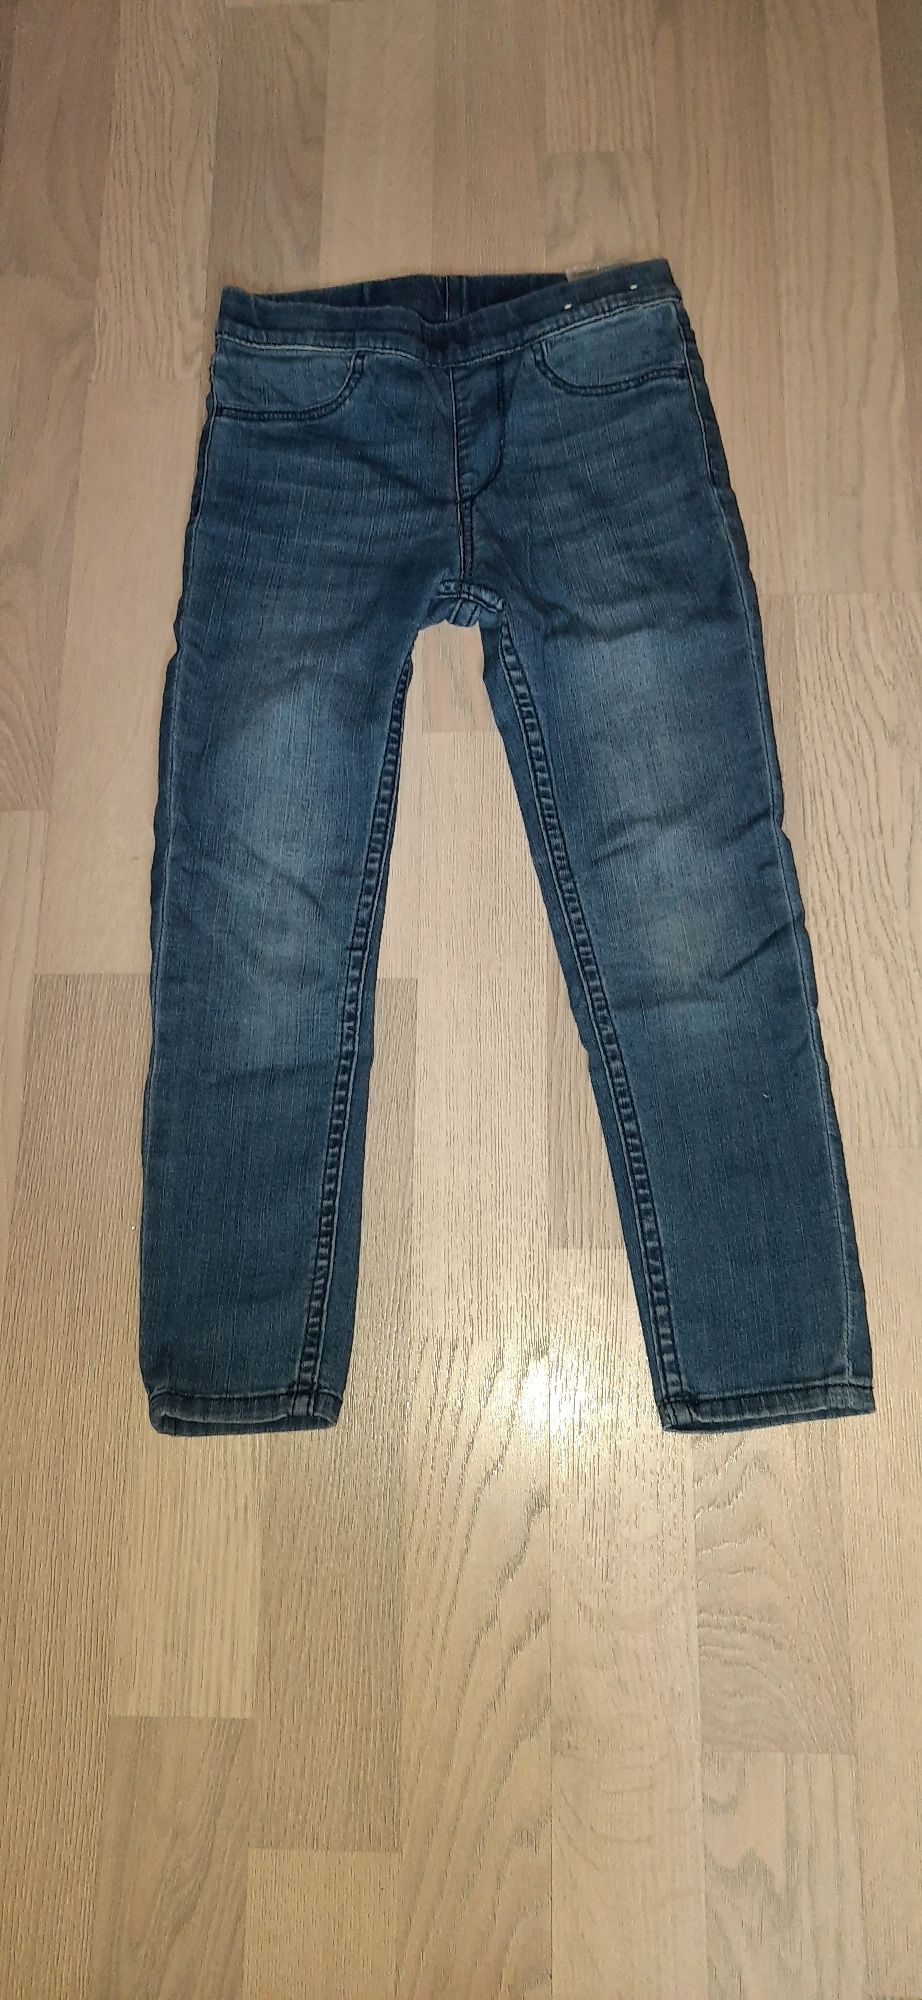 Джегінси фірми H&M,джинси осінь (тягнуться)Розмір 110.